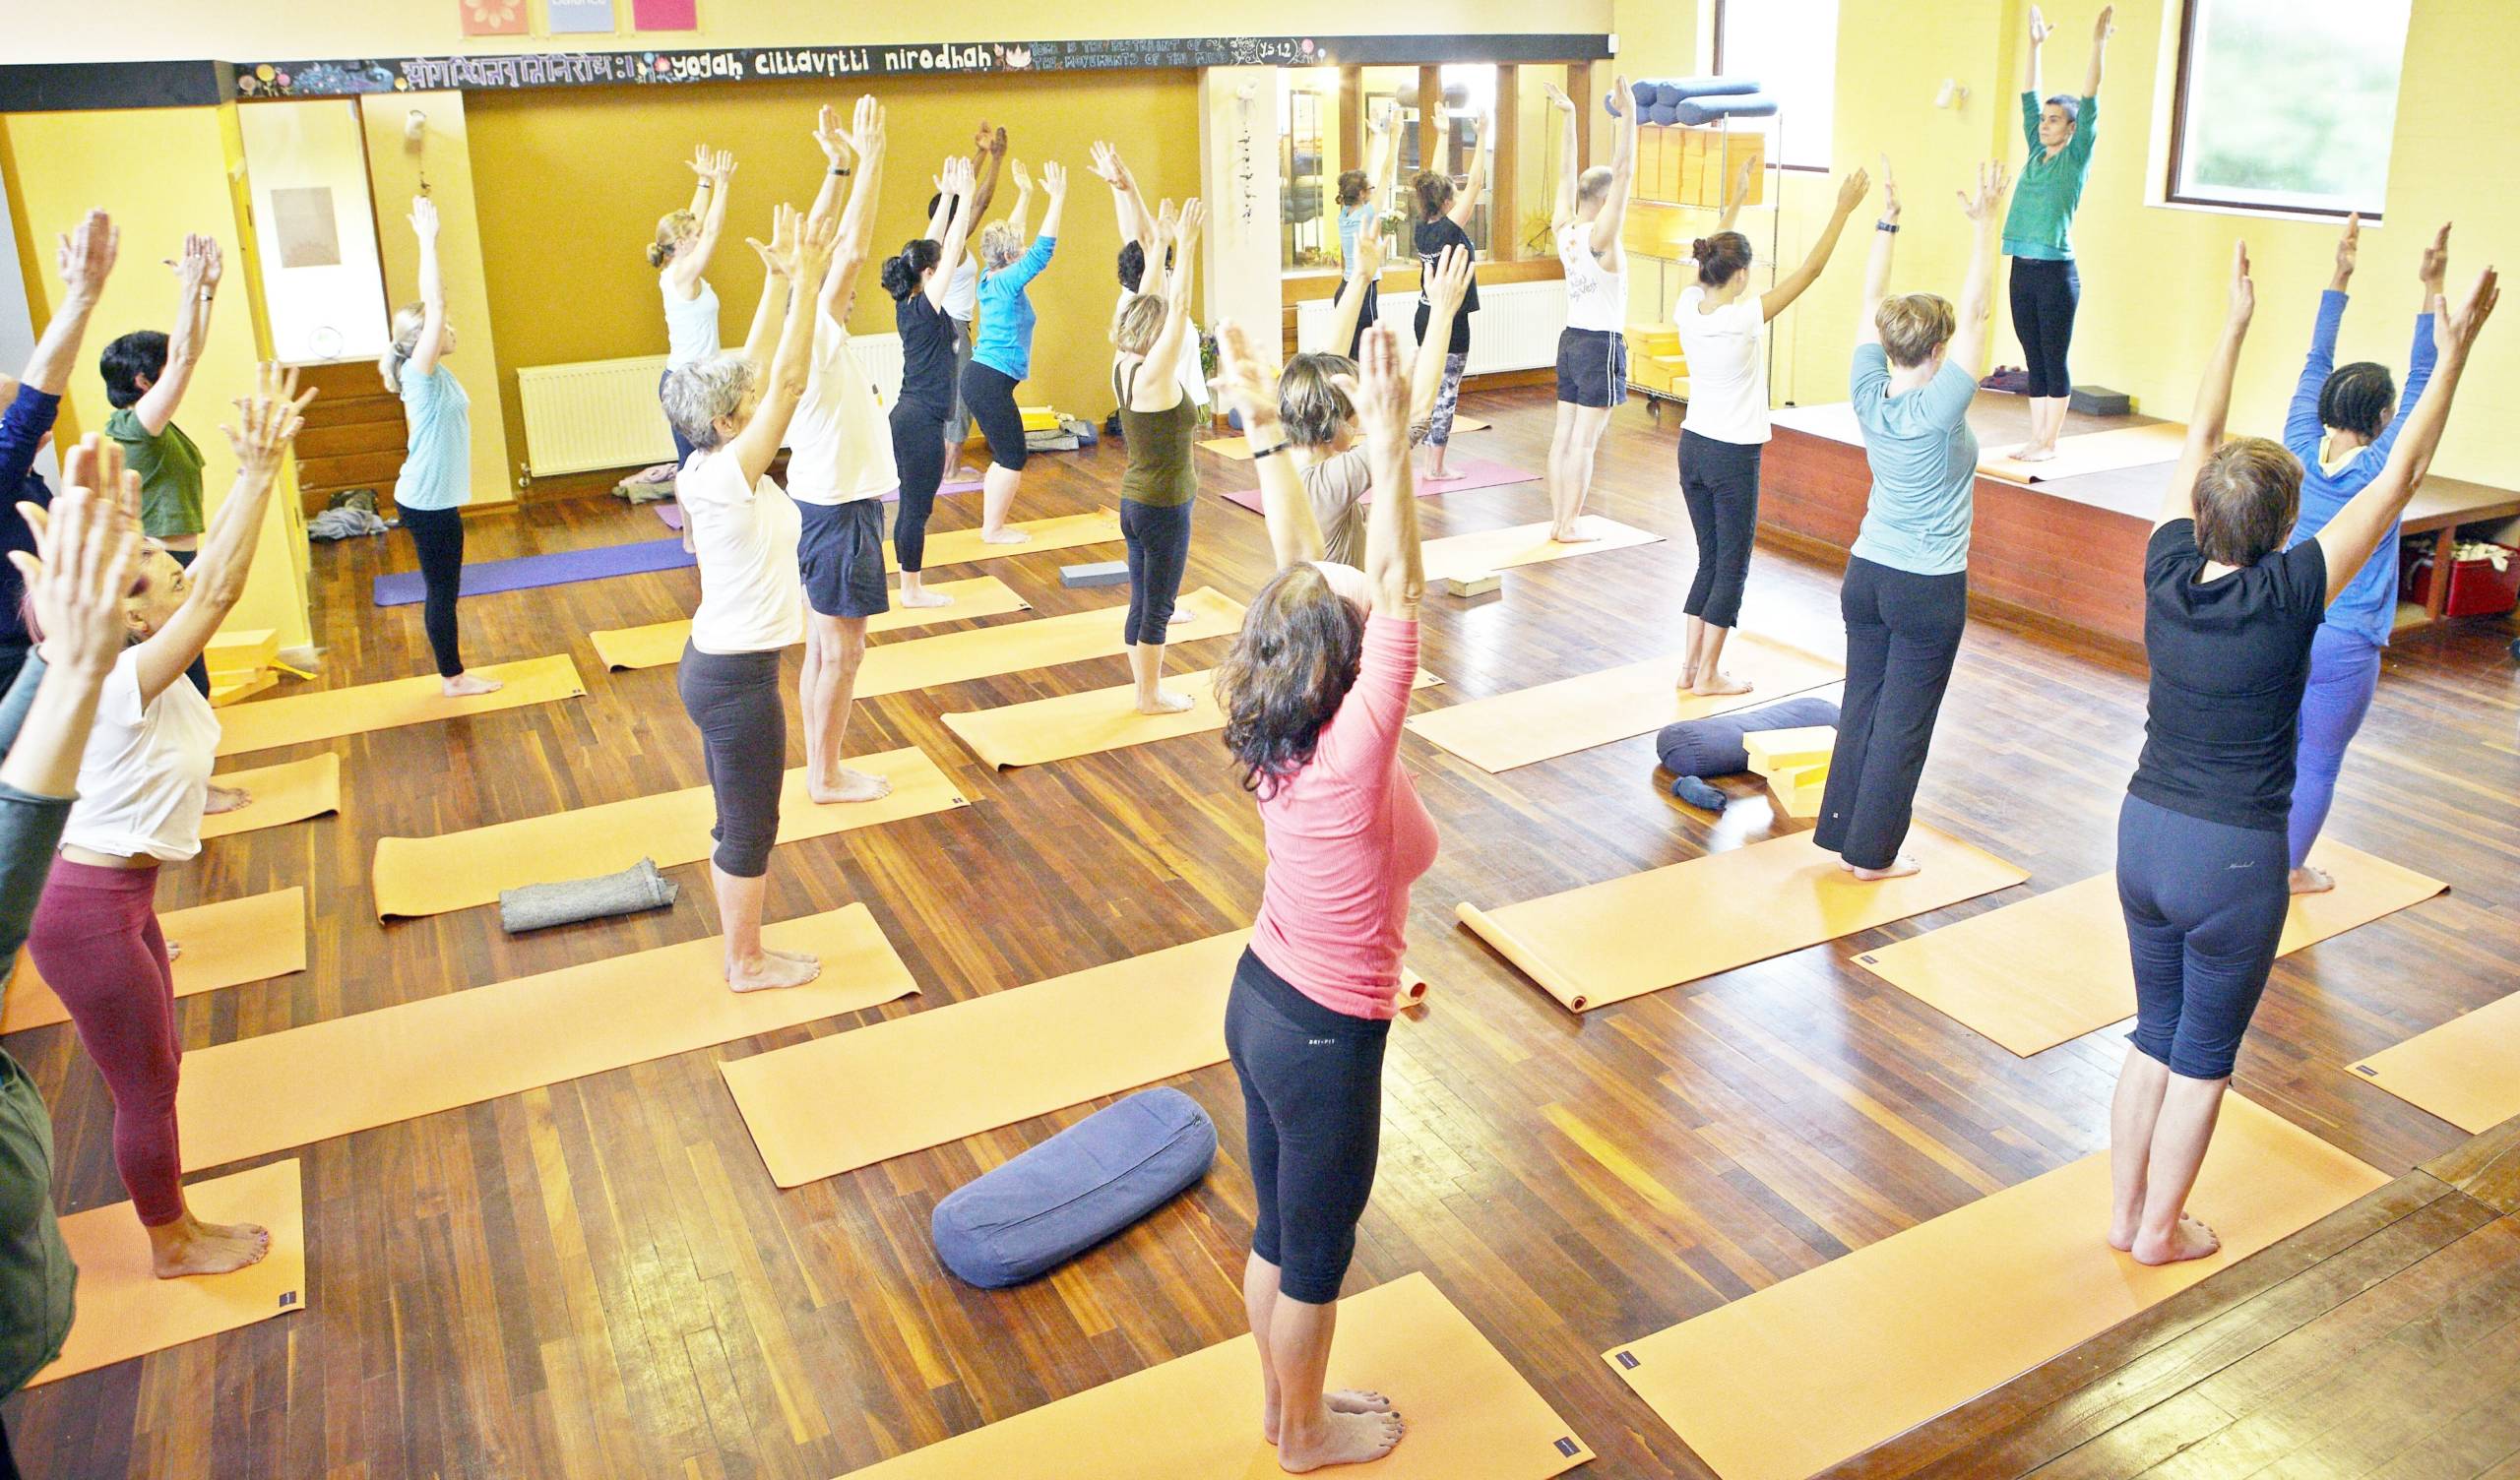 Yogawest  Iyengar yoga studio in Bristol, United Kingdom